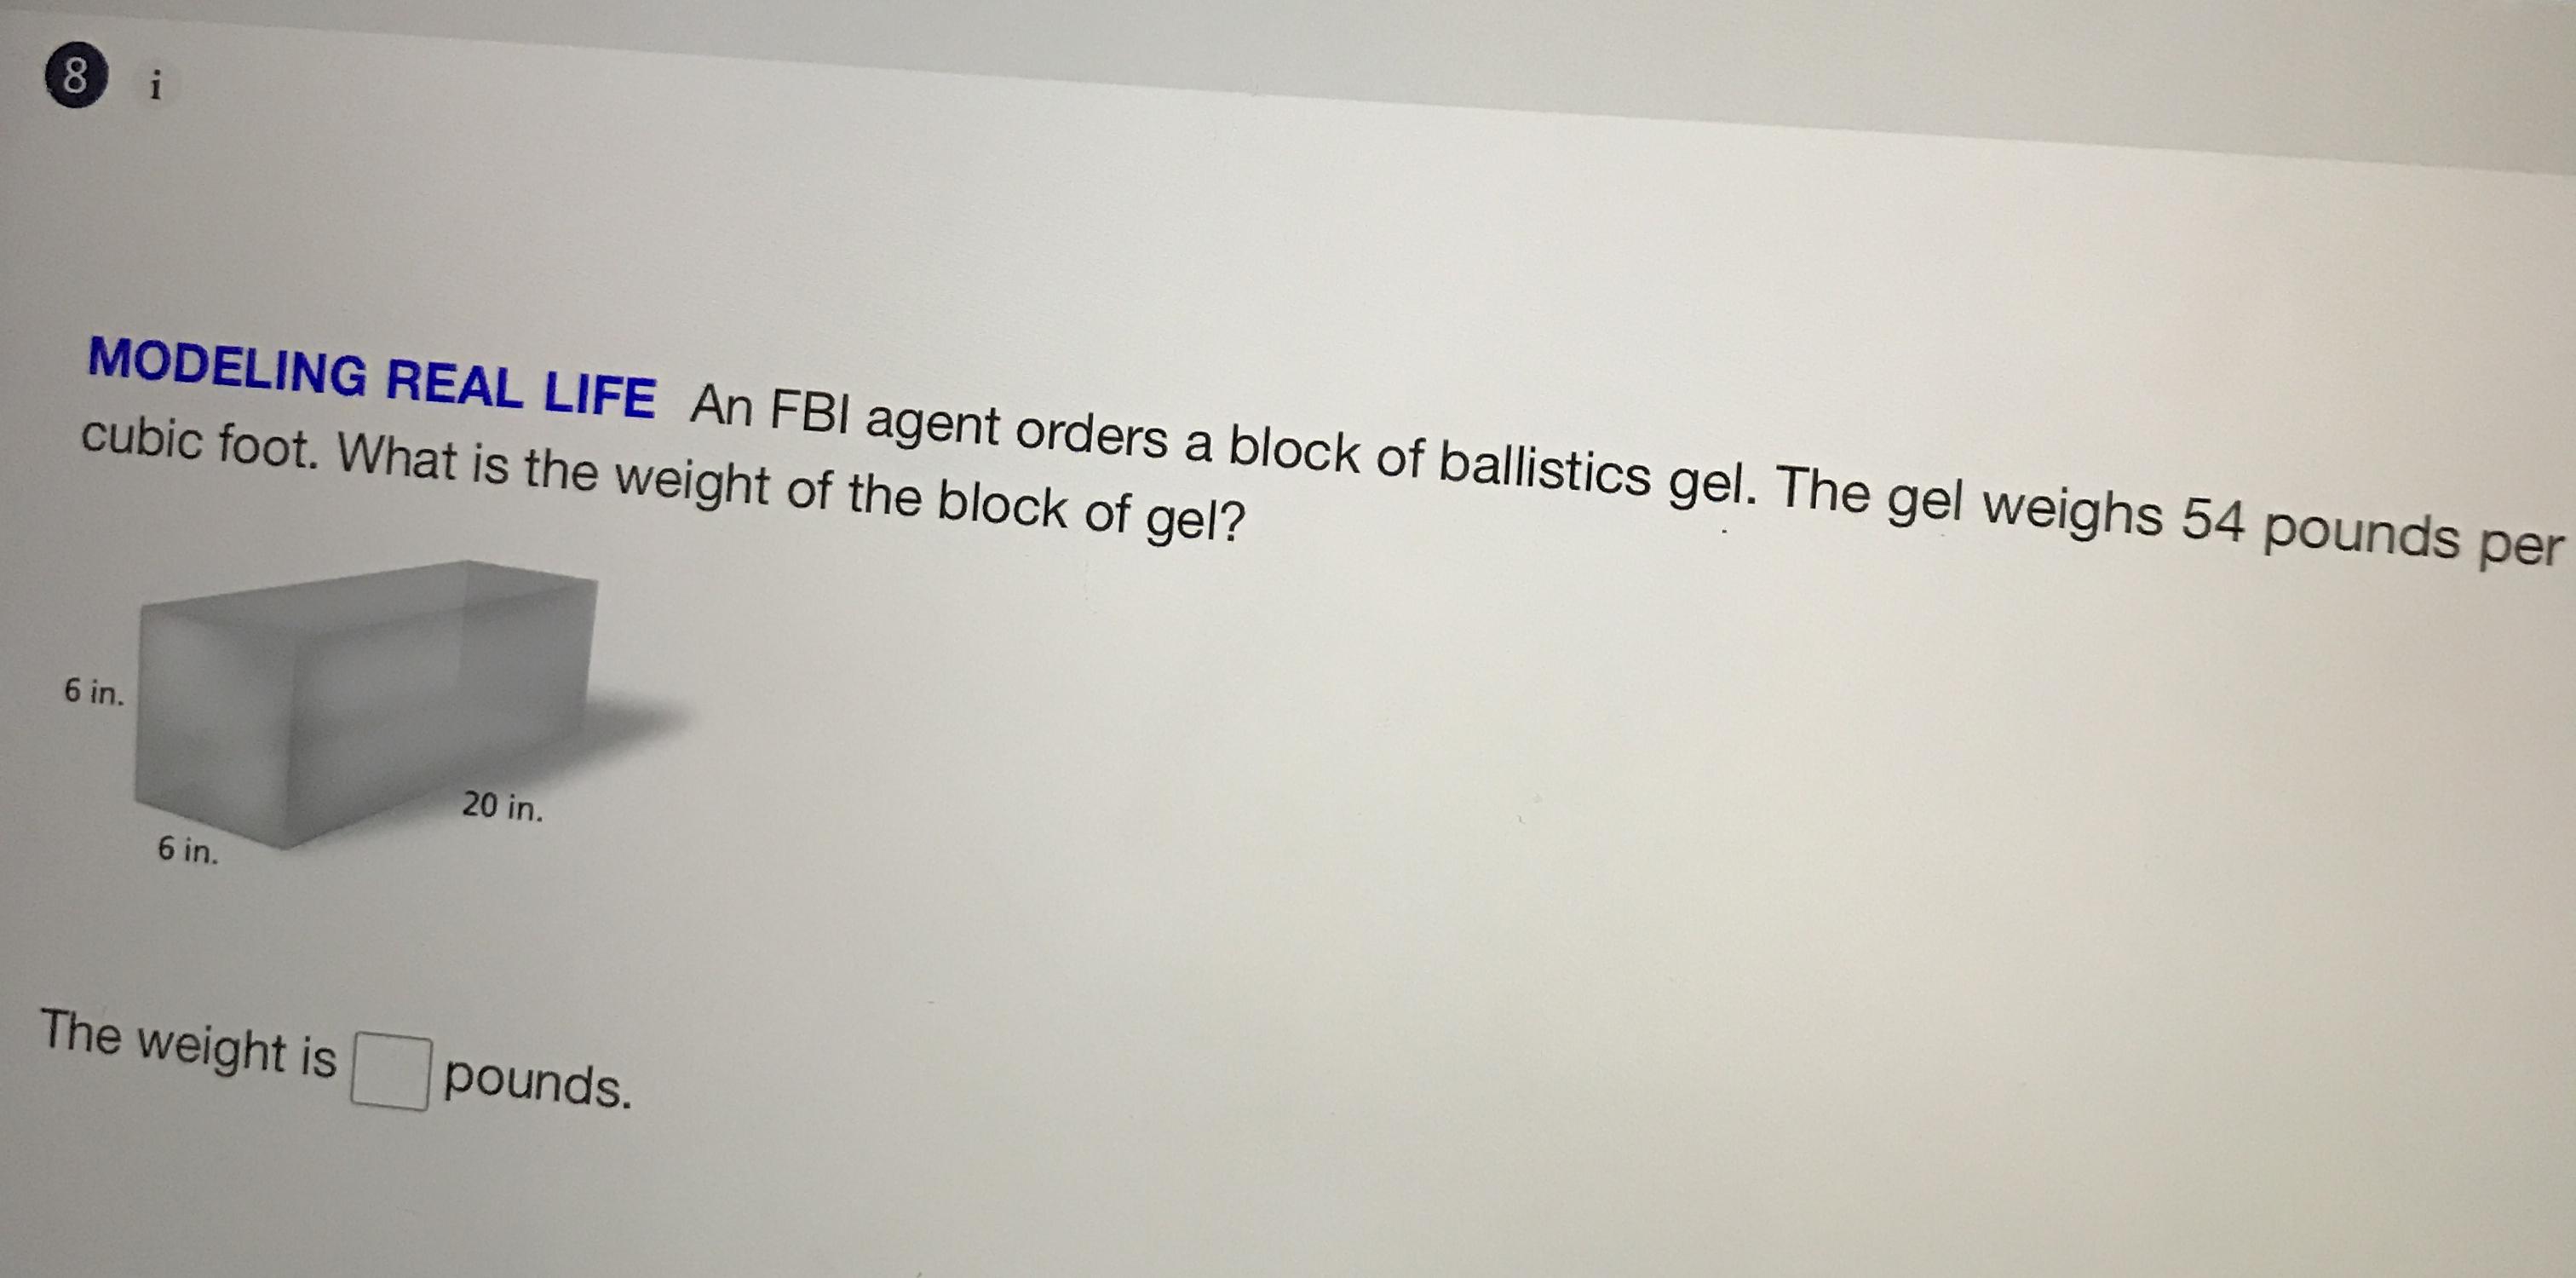 An FBI agent orders a block of ballistics gel. The gel weigh